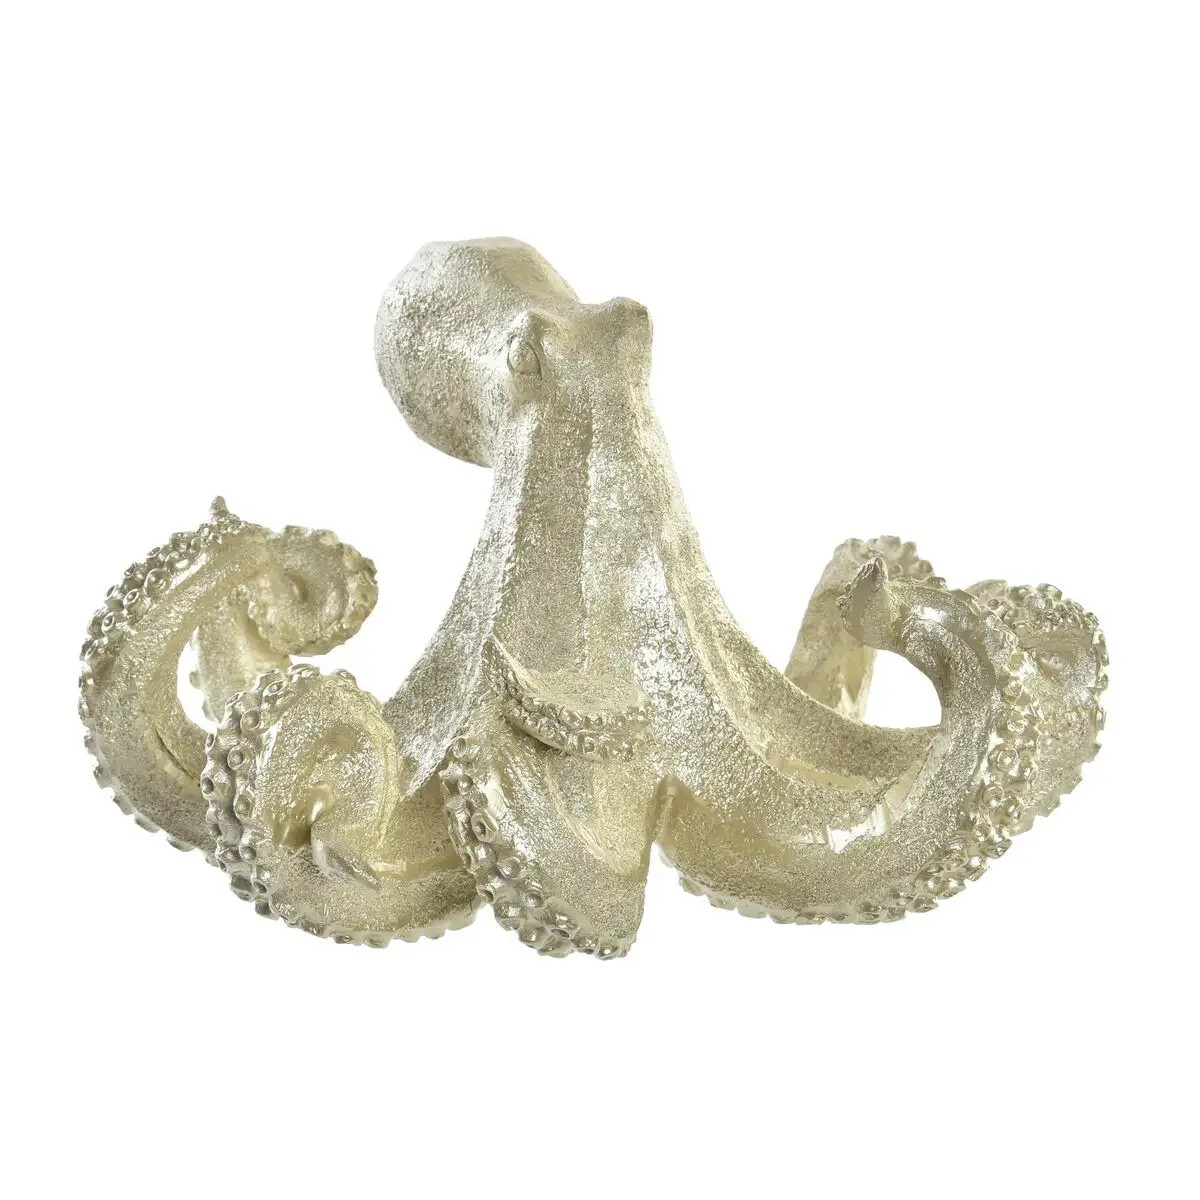 Figurine decorative dkd home decor dore resine pieuvre mediterraneen 25 5 x 24 5 x 15 5 cm _4208. DIAYTAR SENEGAL - Où Choisir est une Célébration. Découvrez notre sélection de produits qui représentent la diversité et la joie du Sénégal, à chaque étape de votre vie.